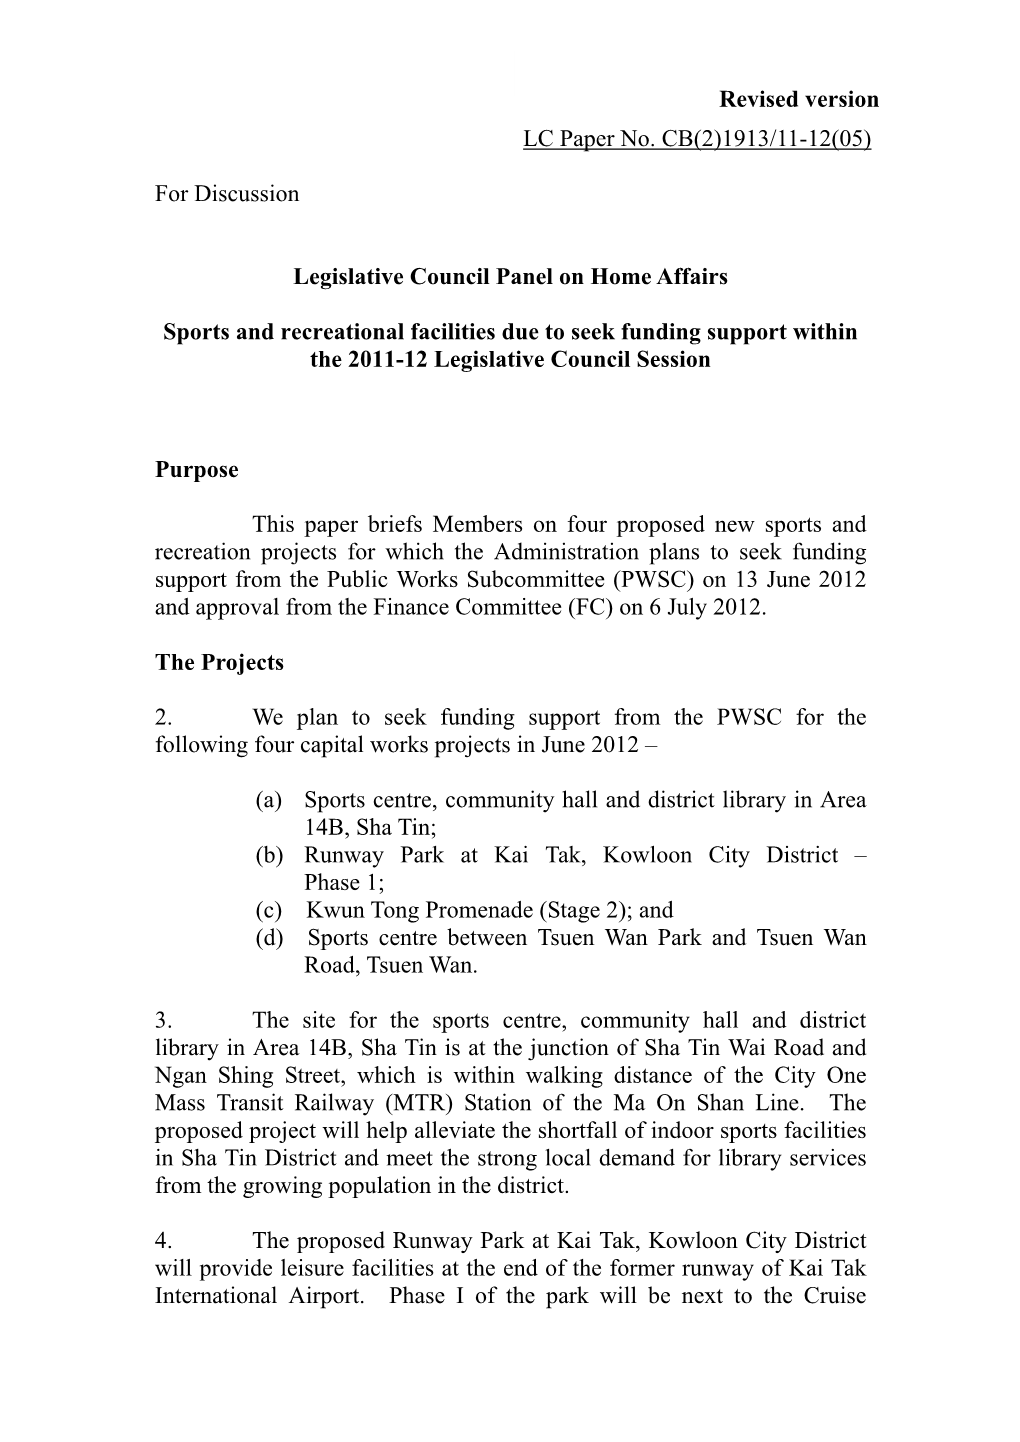 LC Paper No. CB(2)1913/11-12(05) for Discussion Legislative Council